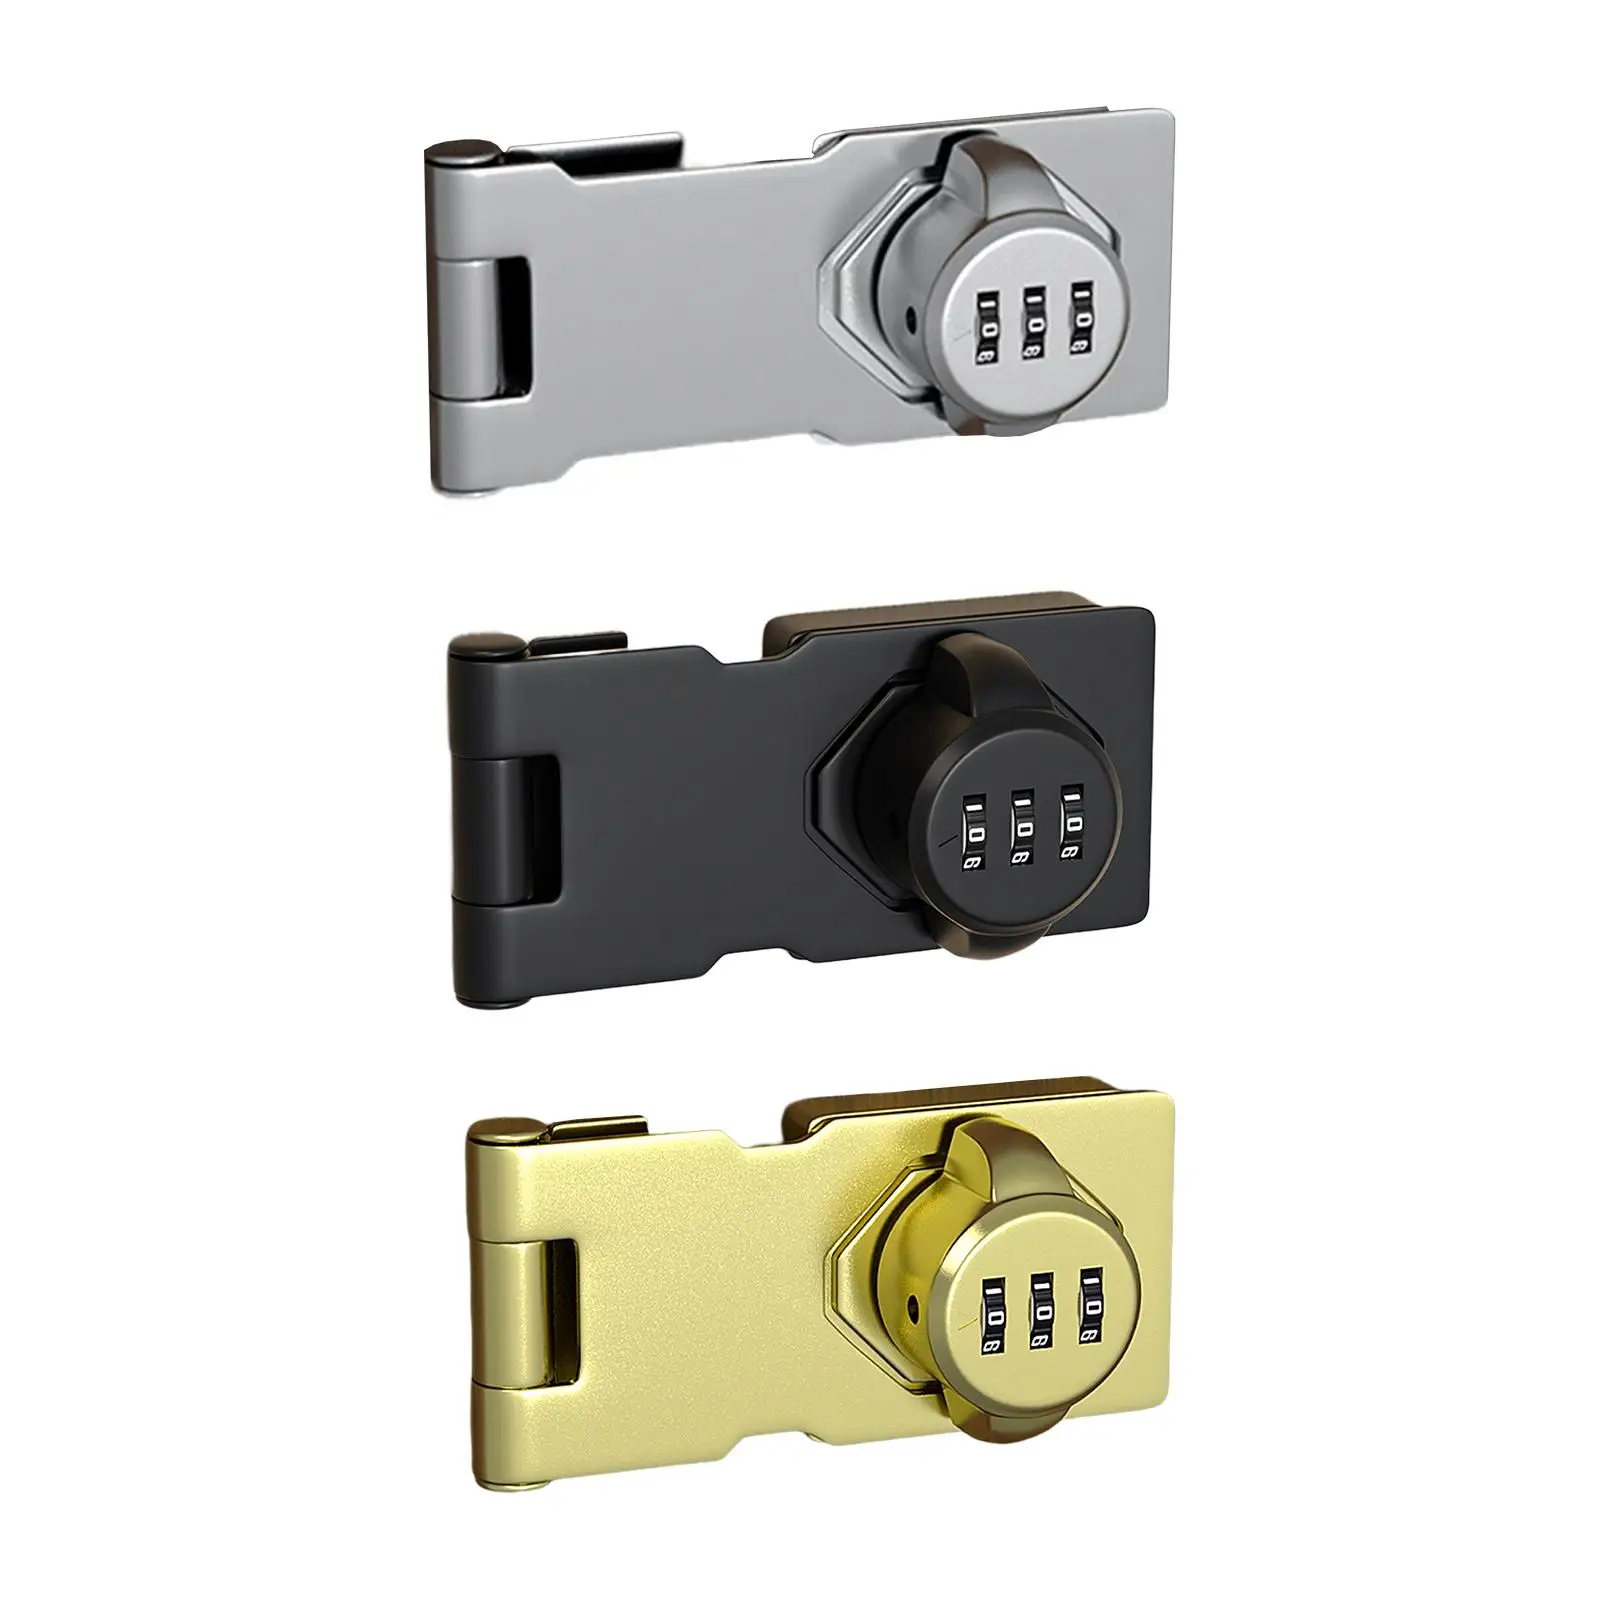 Mechanical Password Door Lock Refrigerator Lock for Bathroom Office Garage